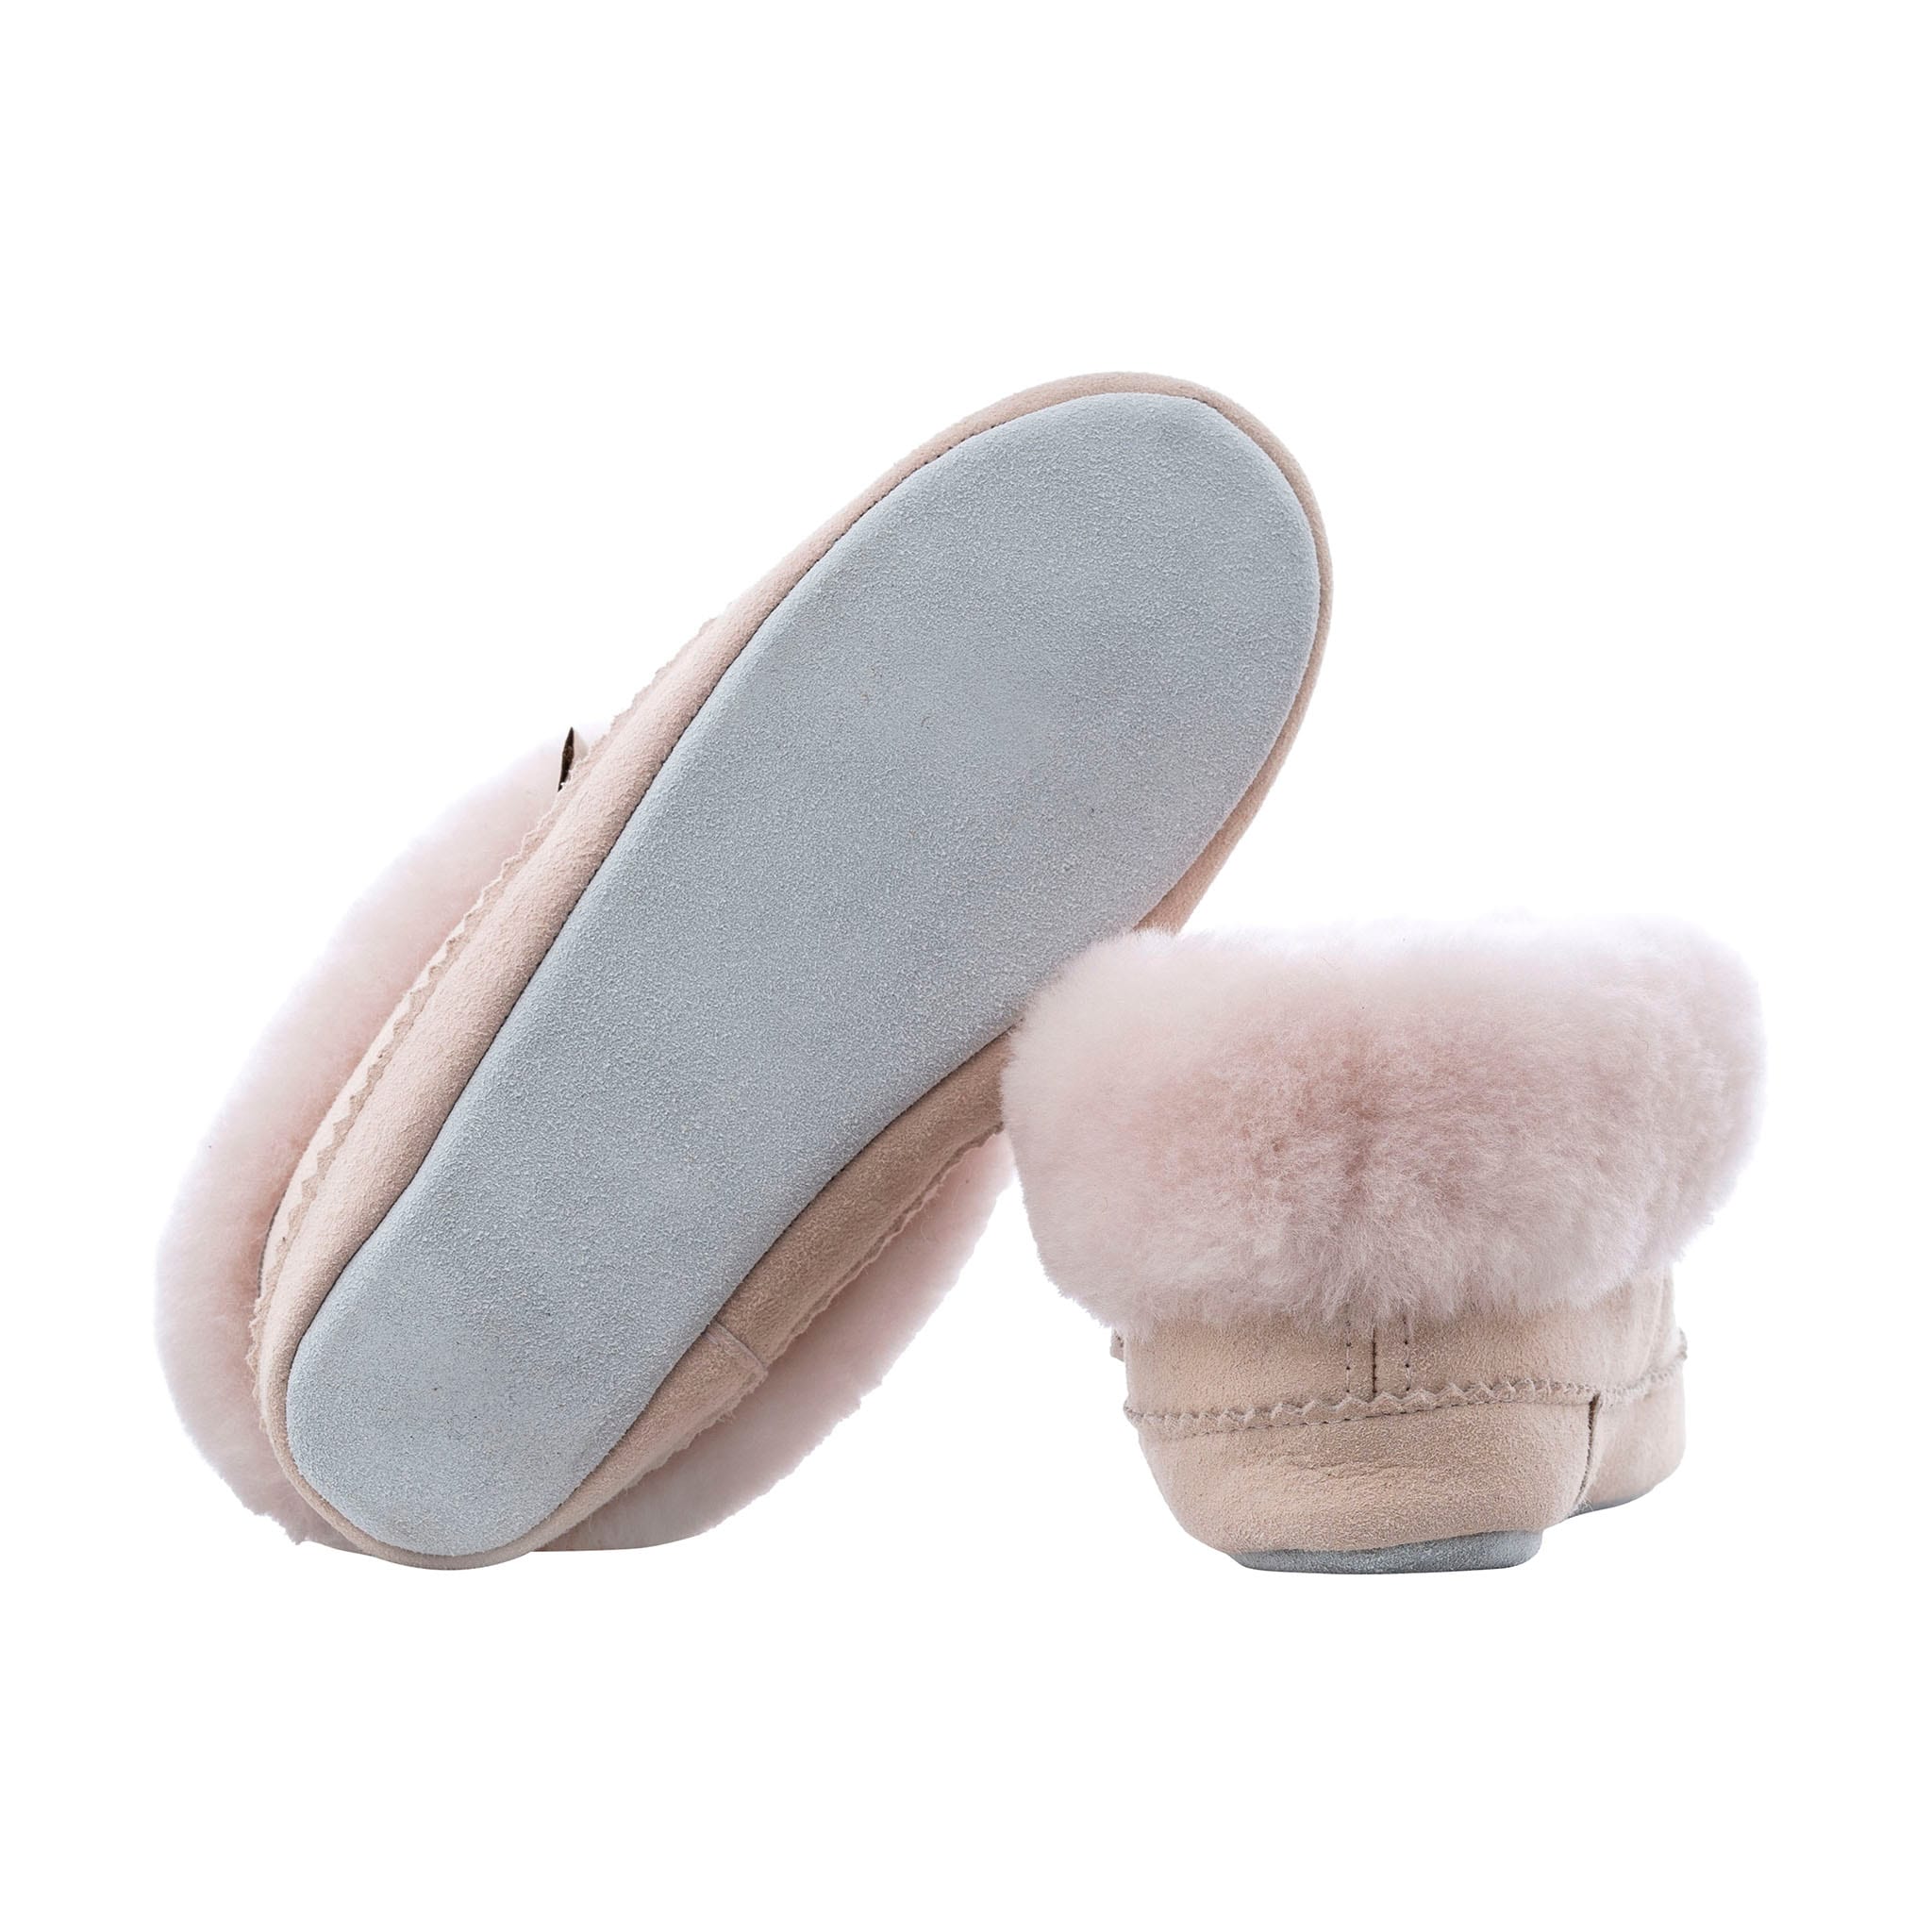 Piteå slippers , size 30-35